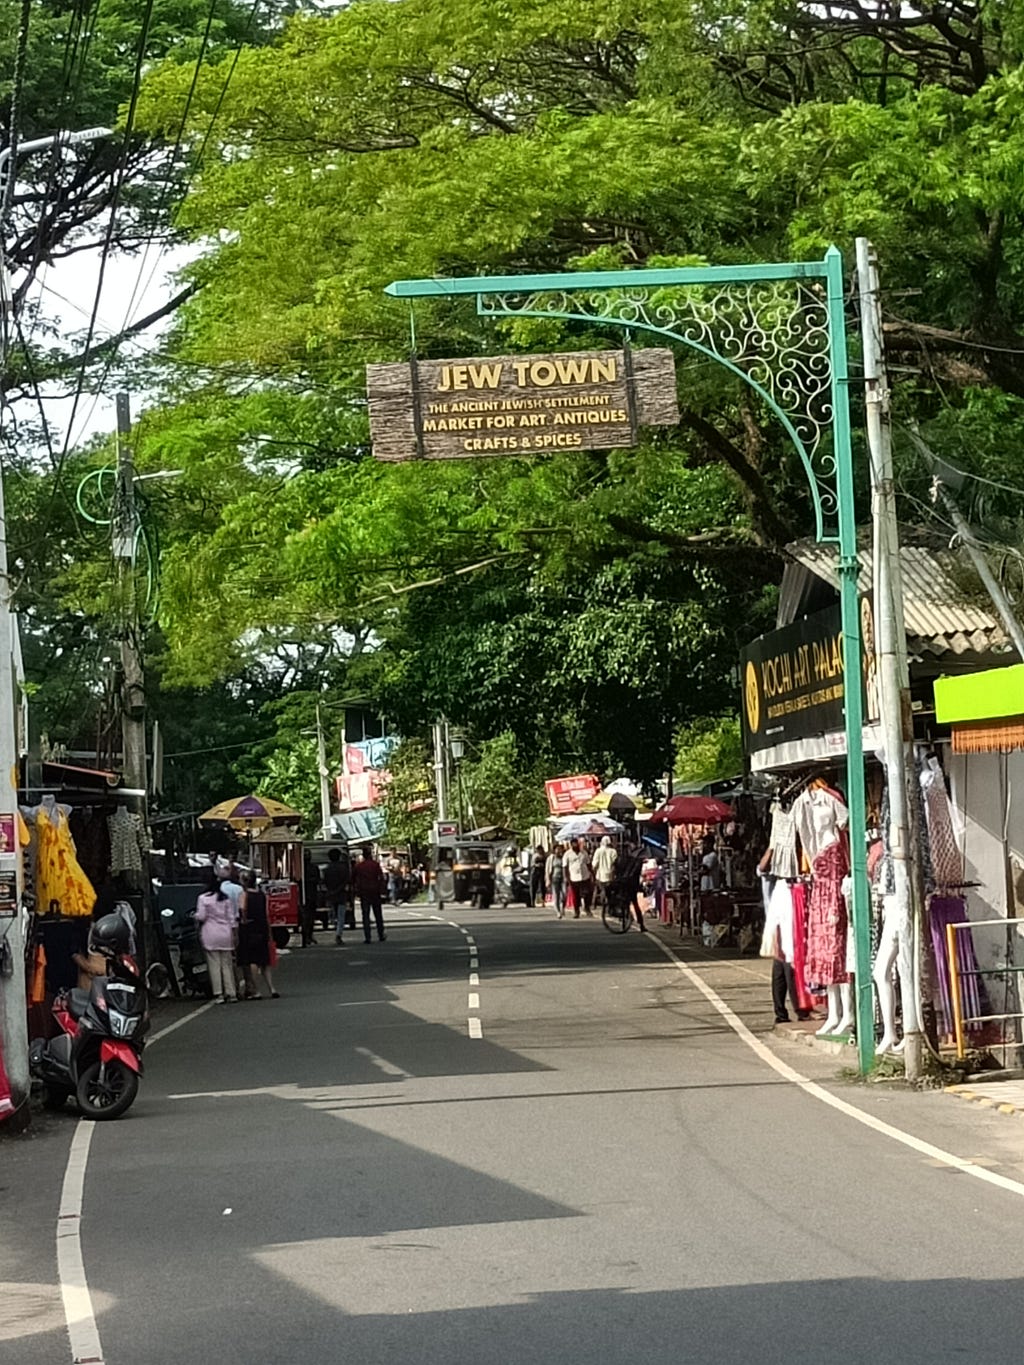 Street view of Jew Town, Cochin, Kerala.